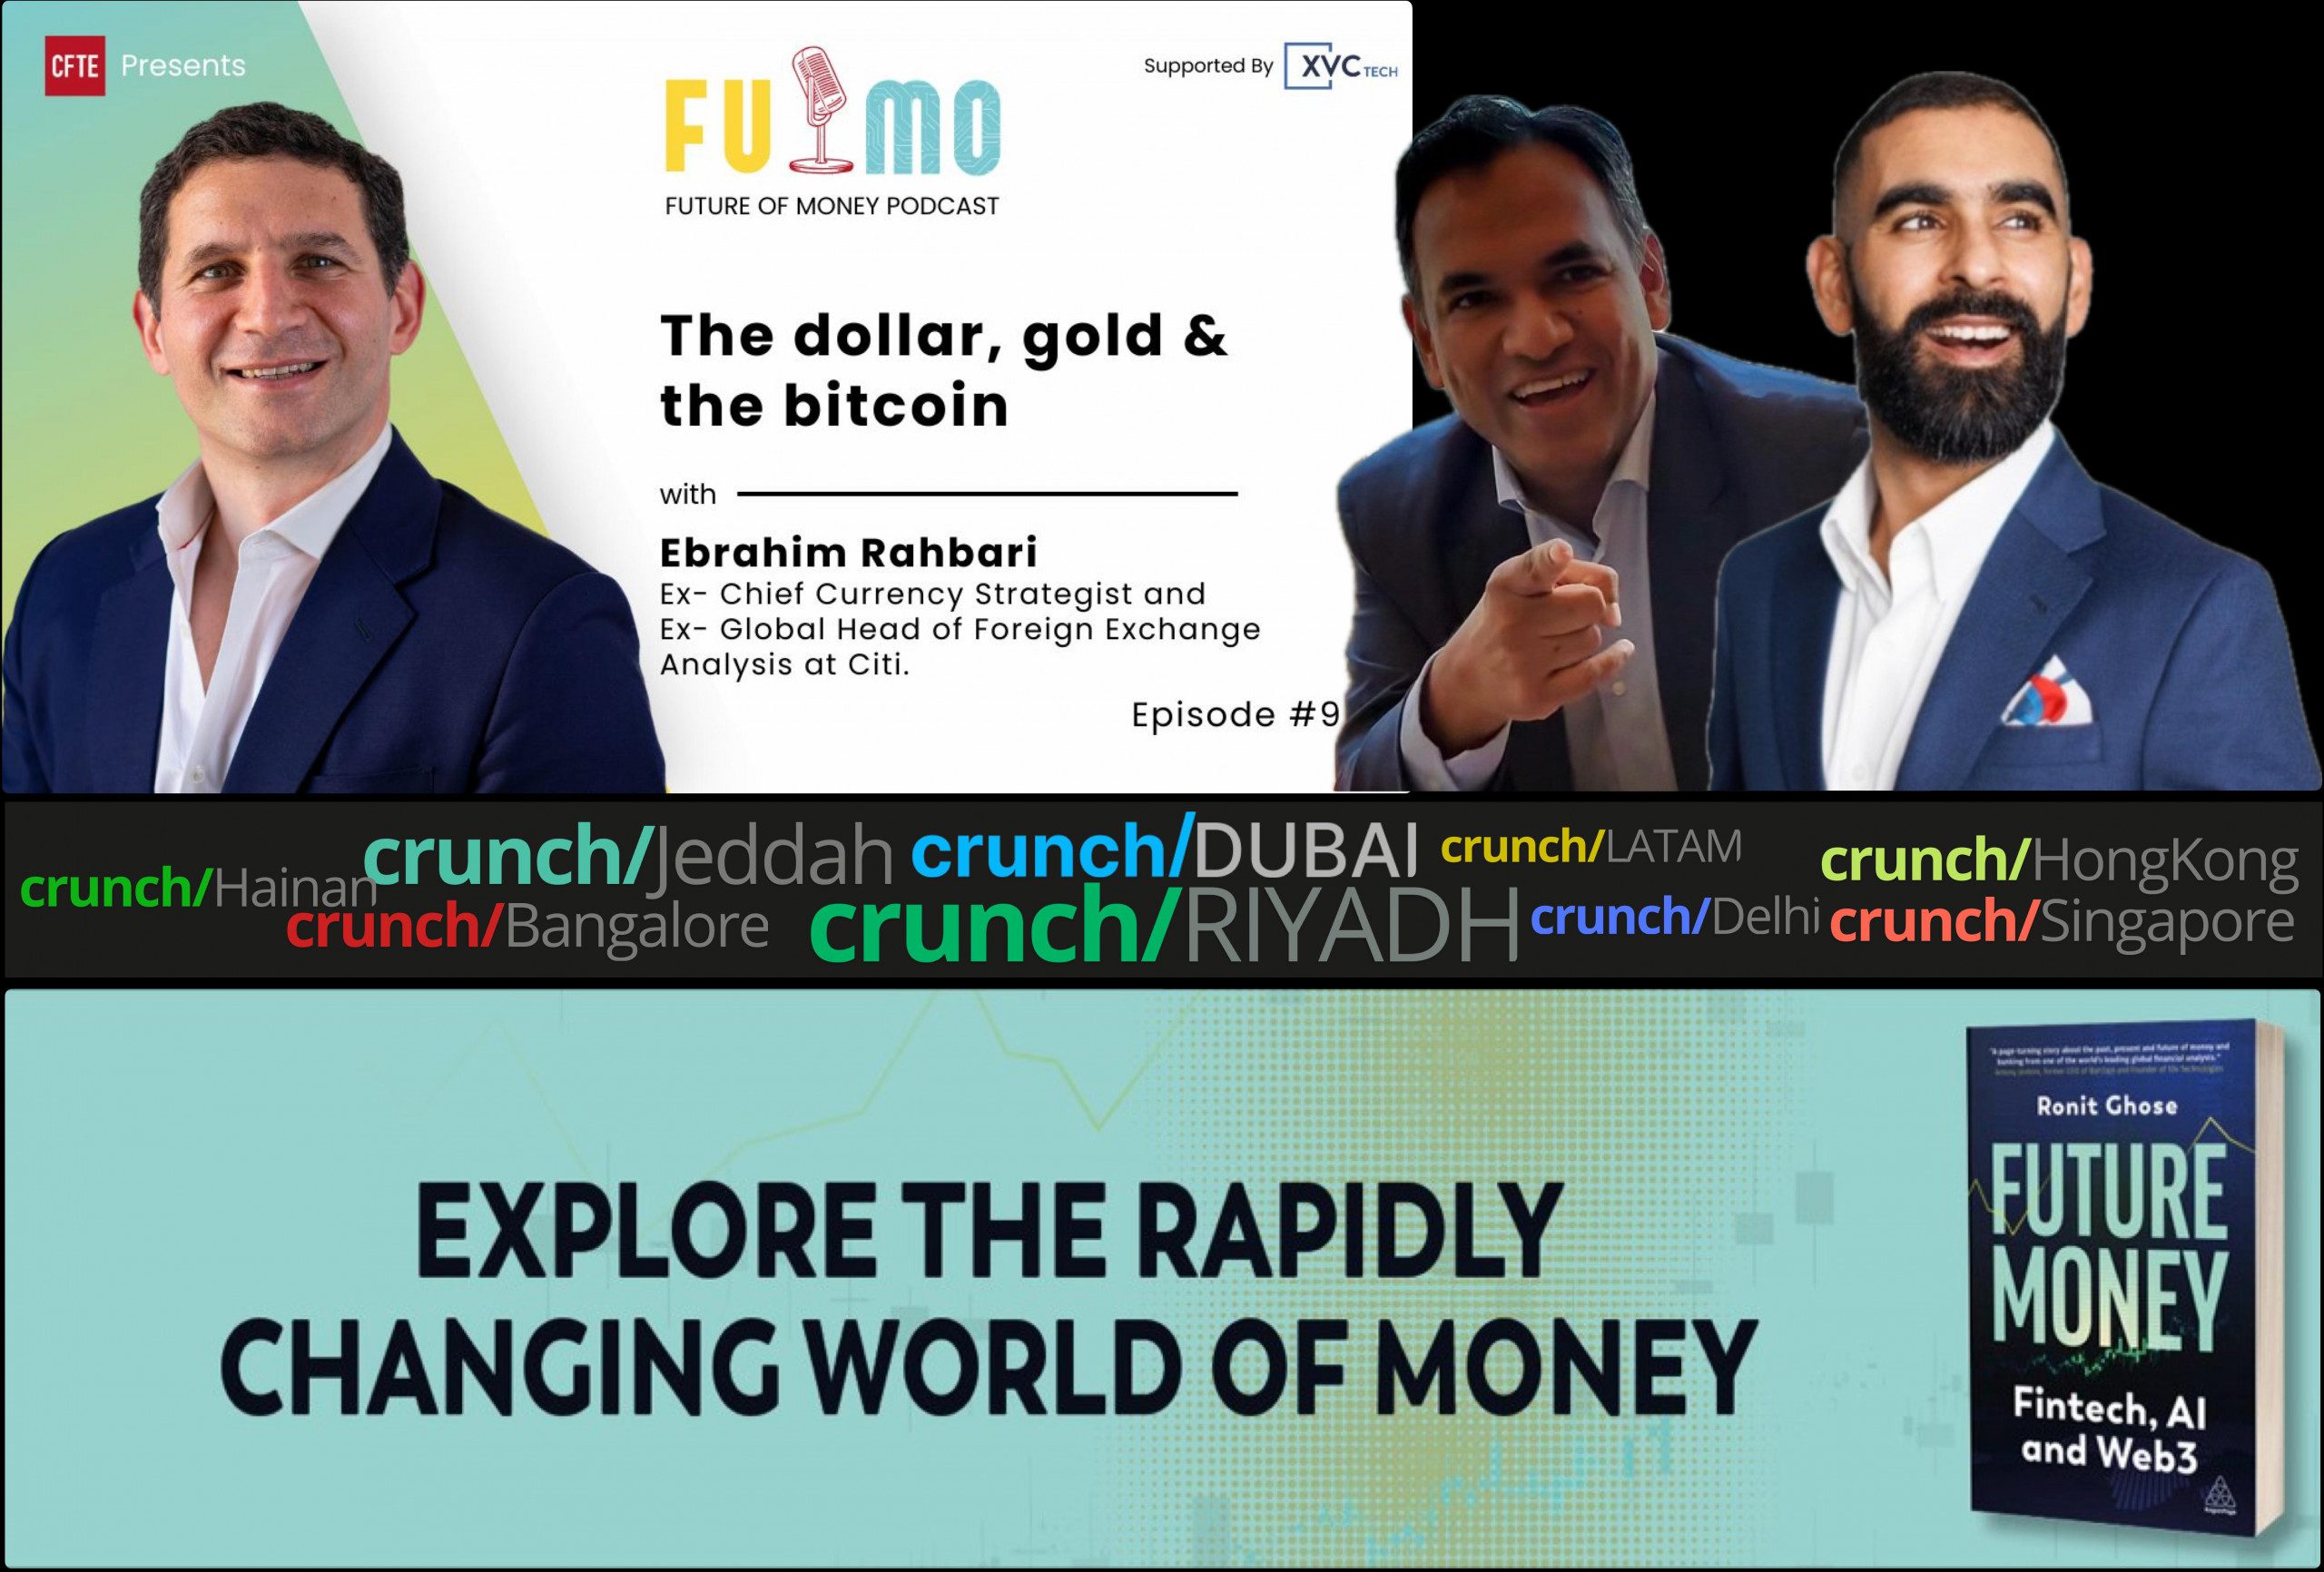 Подкаст "Будущее денег", который ведут Ронит Гоуз и Гаурав Дхар, гость Эбрахим Рахбари - Доллар, золото и биткоин версии 2.